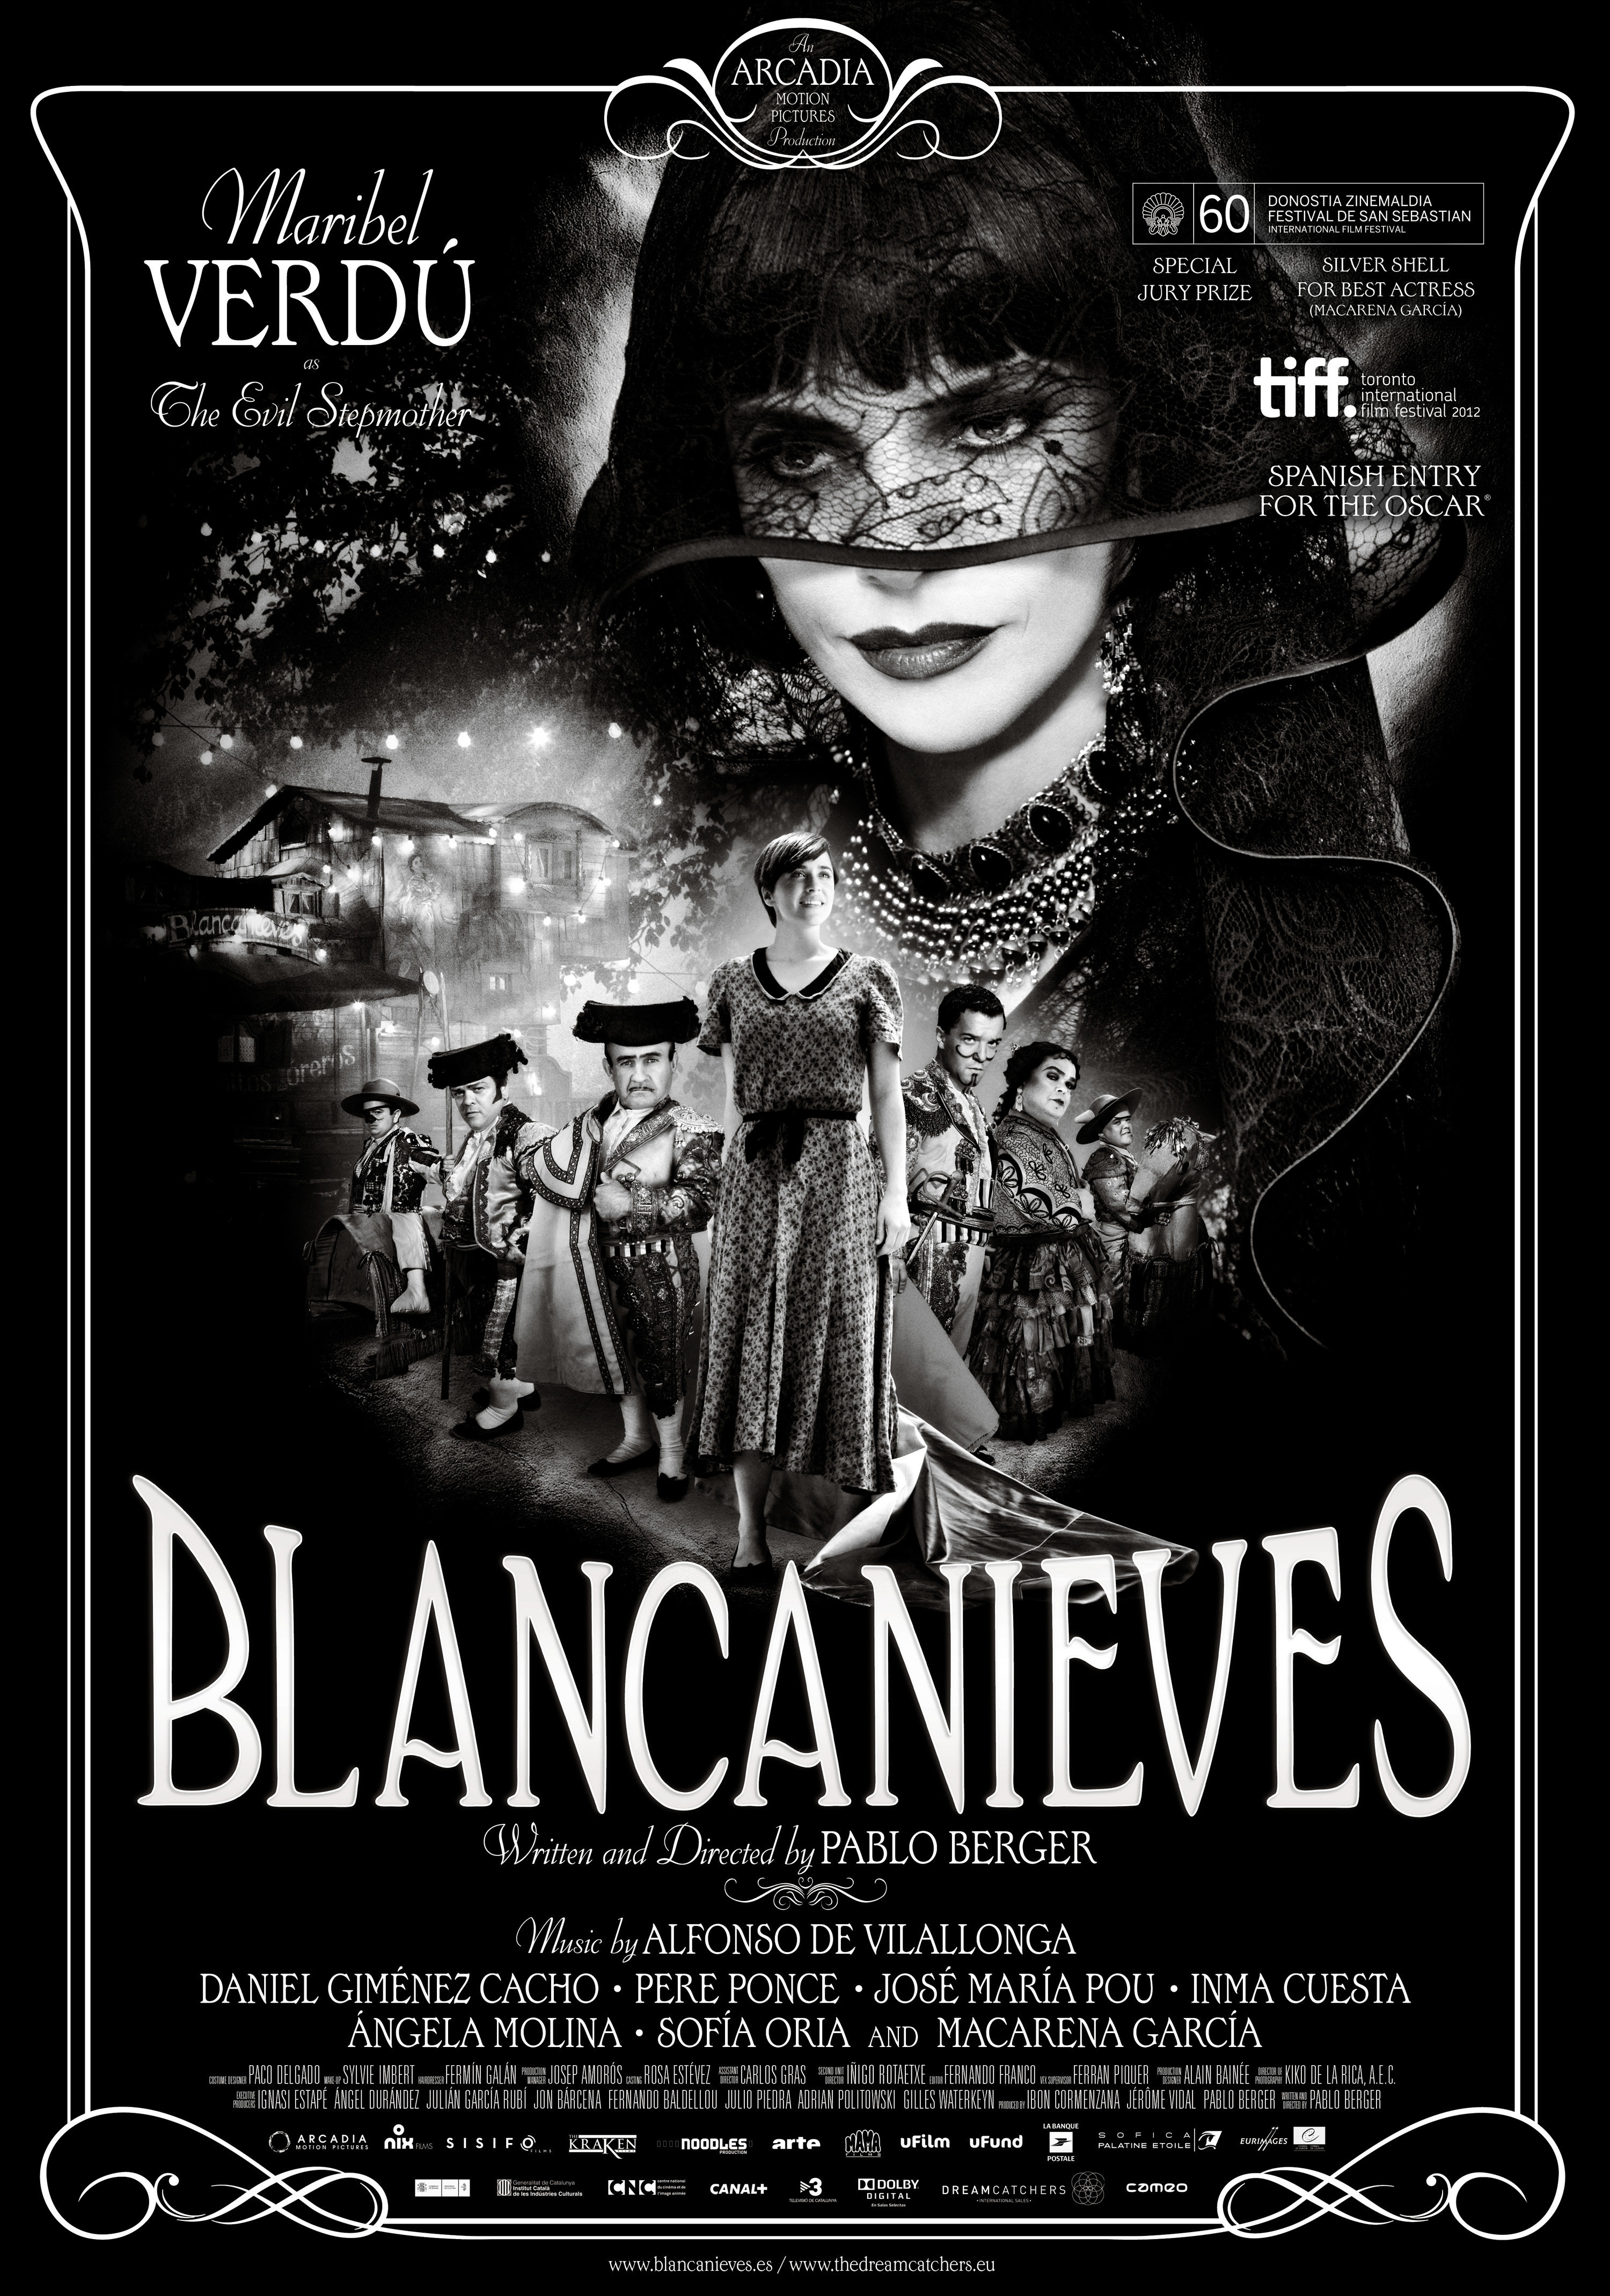 Blancanieves - Movie Poster #1 (Original)